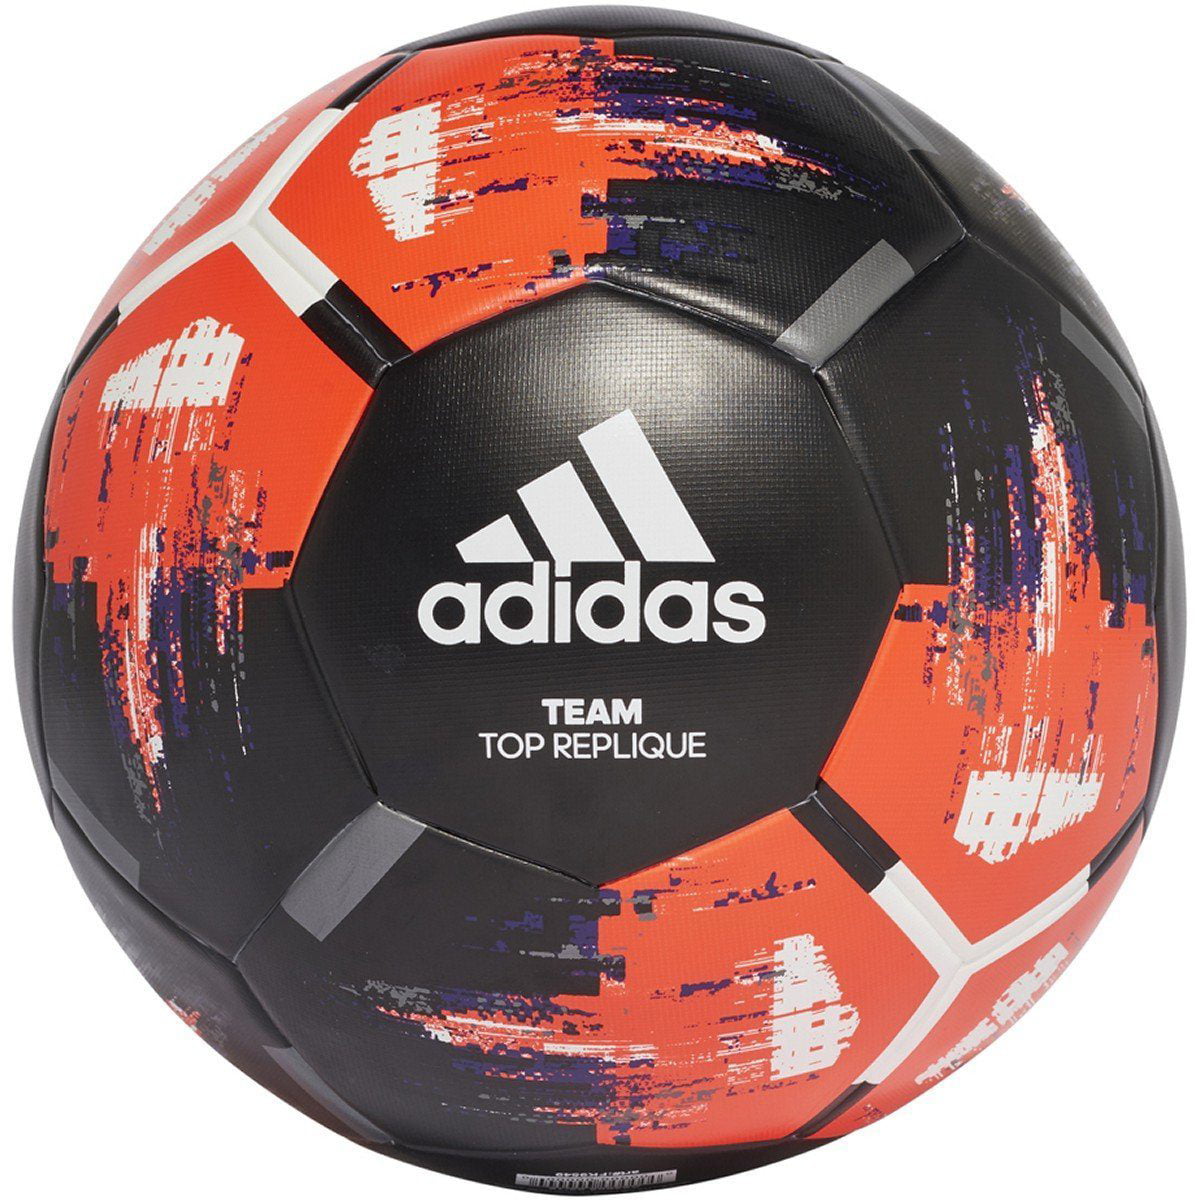 adidas Team Top Replique Soccer Ball - Walmart.com - Walmart.com